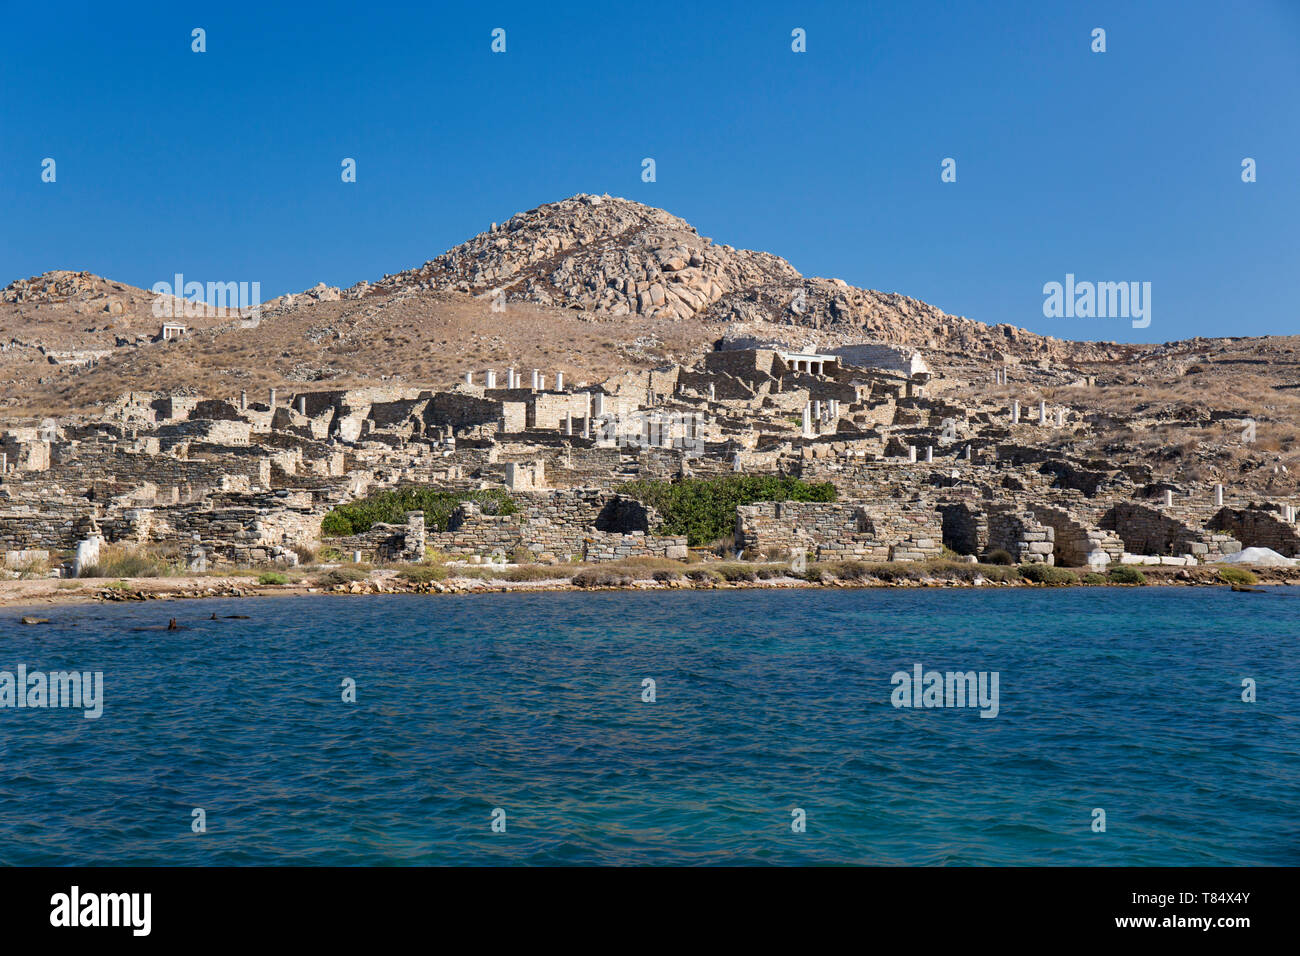 Delos, Mykonos, südliche Ägäis, Griechenland. Blick vom Meer auf die Delos archäologische Stätte an den unteren Hängen des Berg Kynthos. Stockfoto